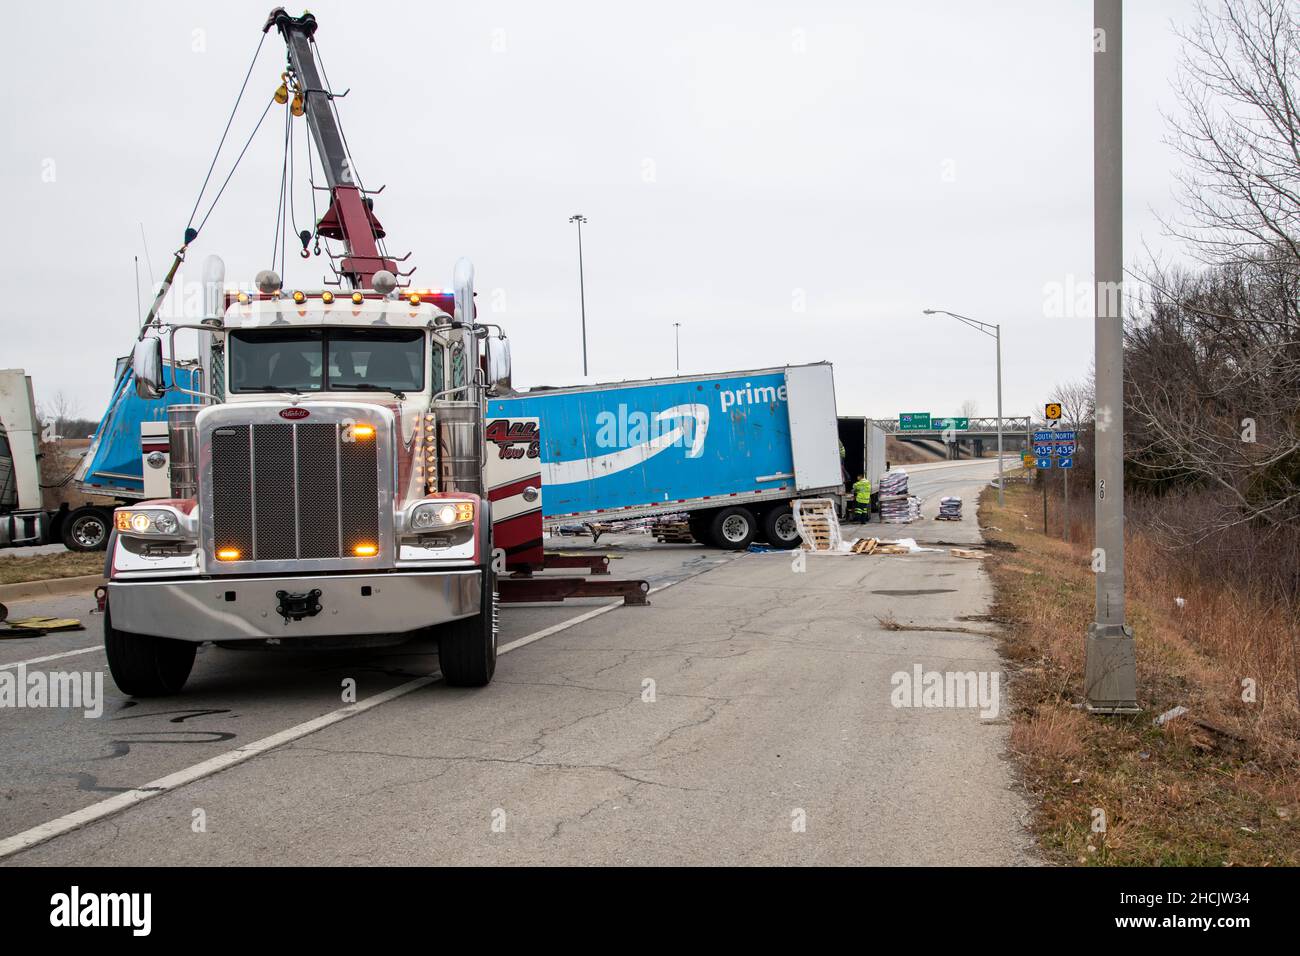 Kansas City, Kansas. LKW, der Amazon Prime Anhänger voller Hundefutter zog,  kam zu schnell von der Autobahnrampe und drehte sich auf der Straße um.  Abschleppwagen mit Stockfotografie - Alamy